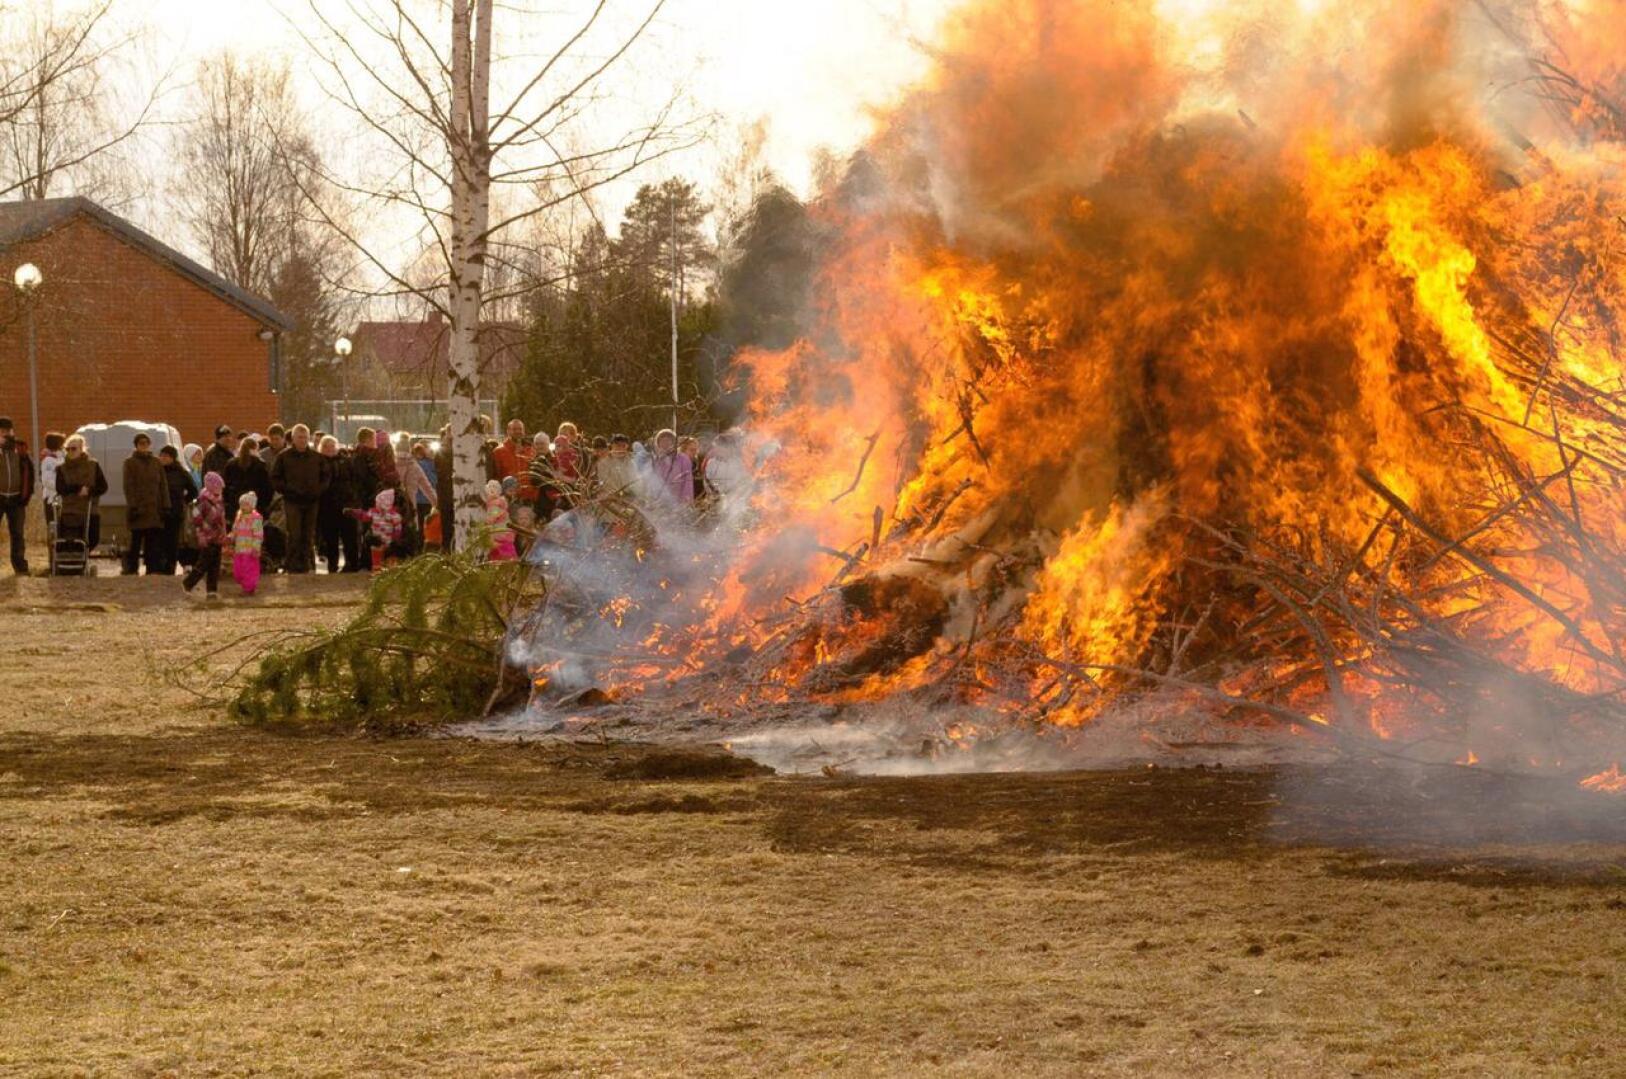 Vetelissä pääsiäiskokkoa on poltettu aiemmin urheilutalon pihassa. Tänä vuonna kokko on koottu Harjutorin viereiselle pellolle.